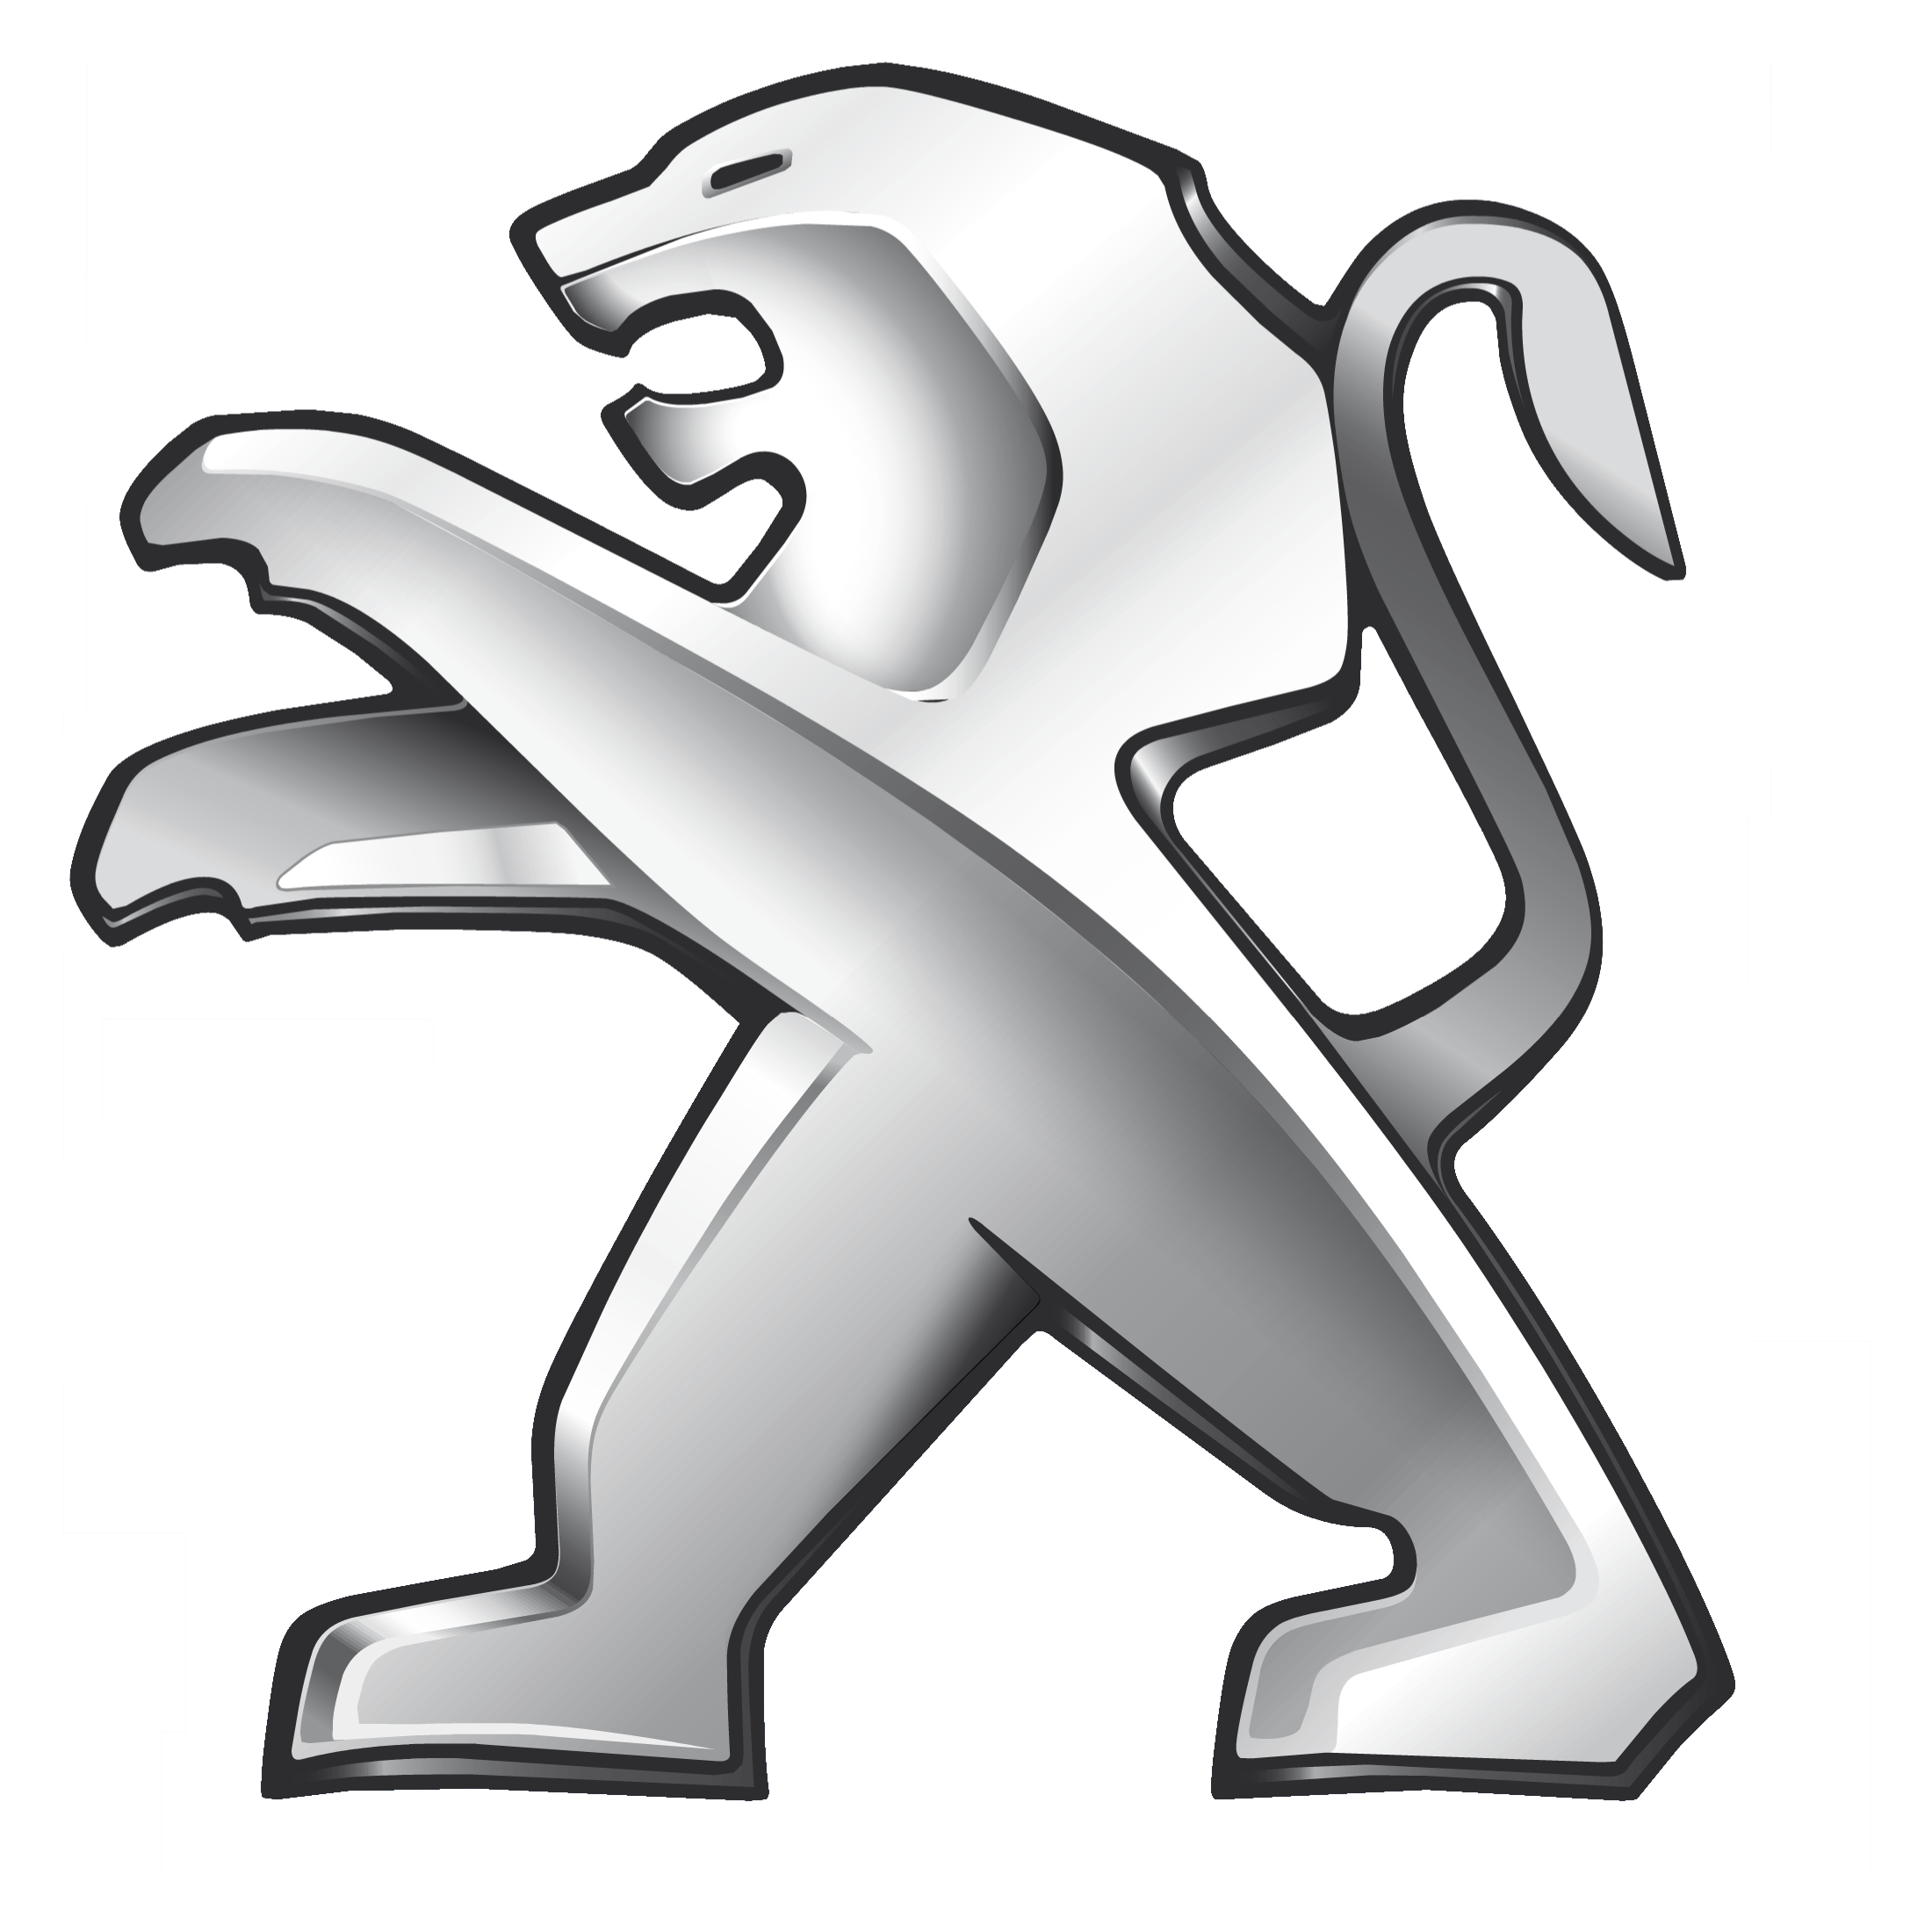 Peugeot Logo Vectors Free Dow